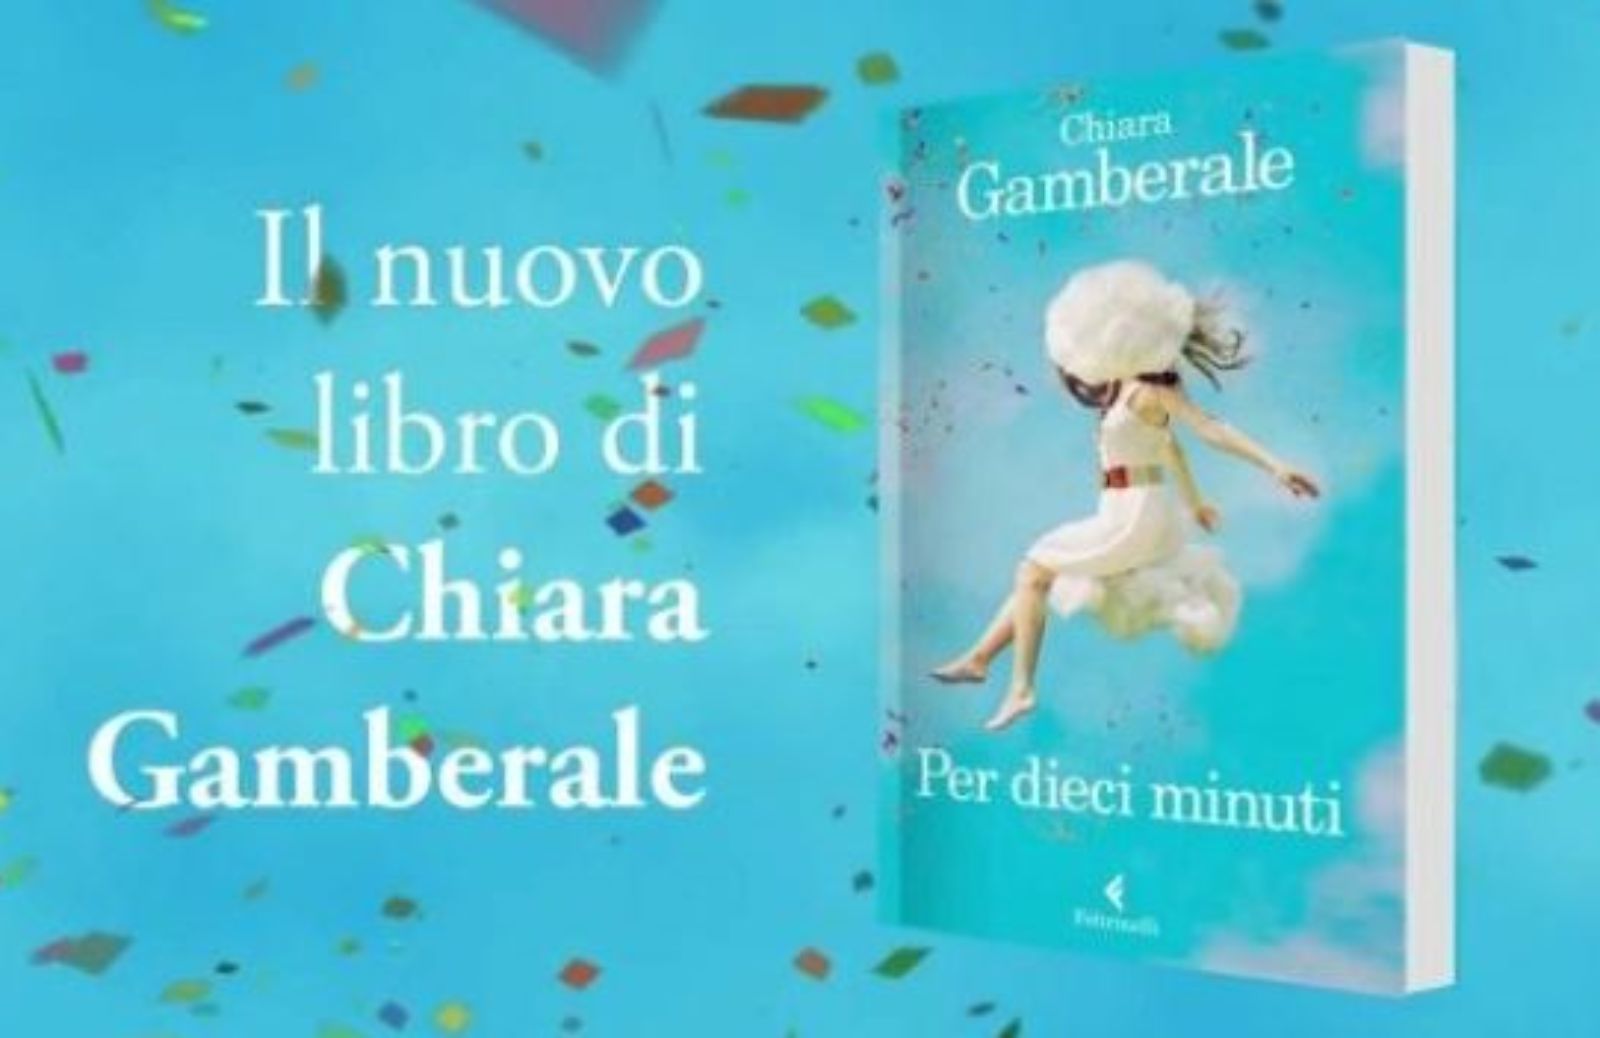 Per dieci minuti: il nuovo romanzo di Chiara Gamberale